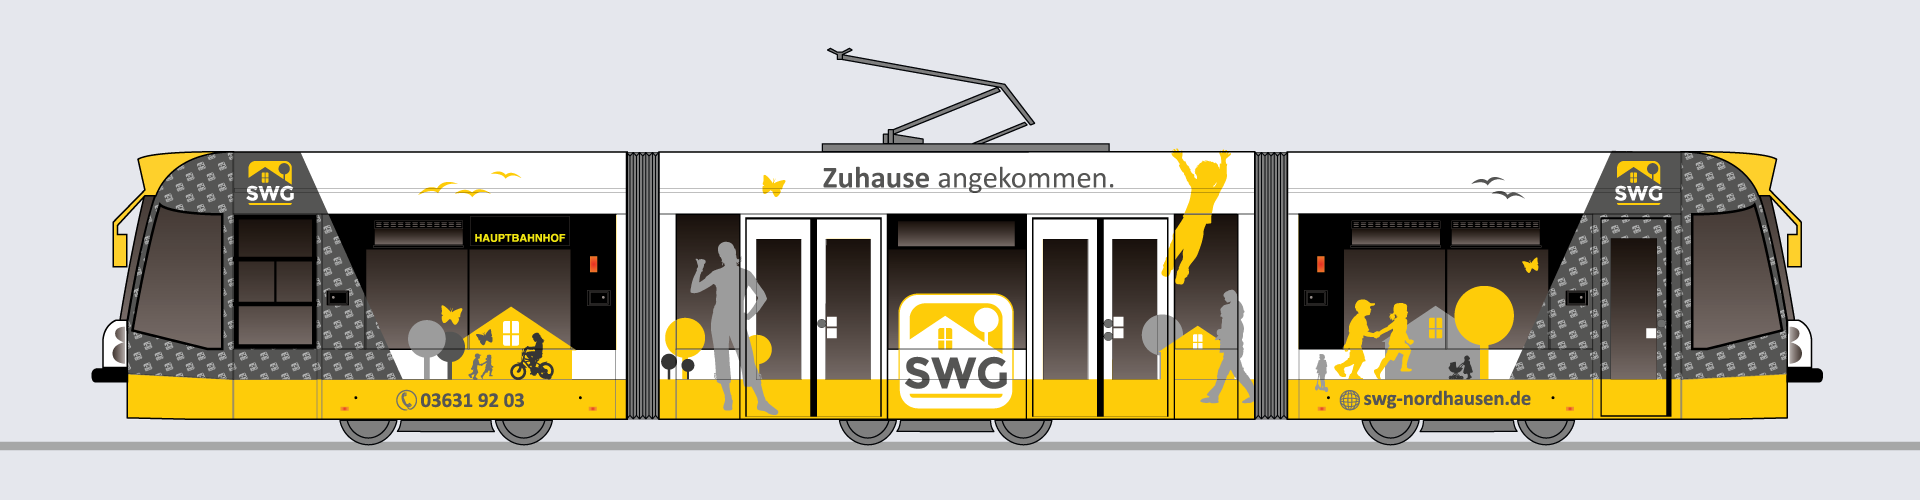 Straßenbahn Werbung / Gestaltung